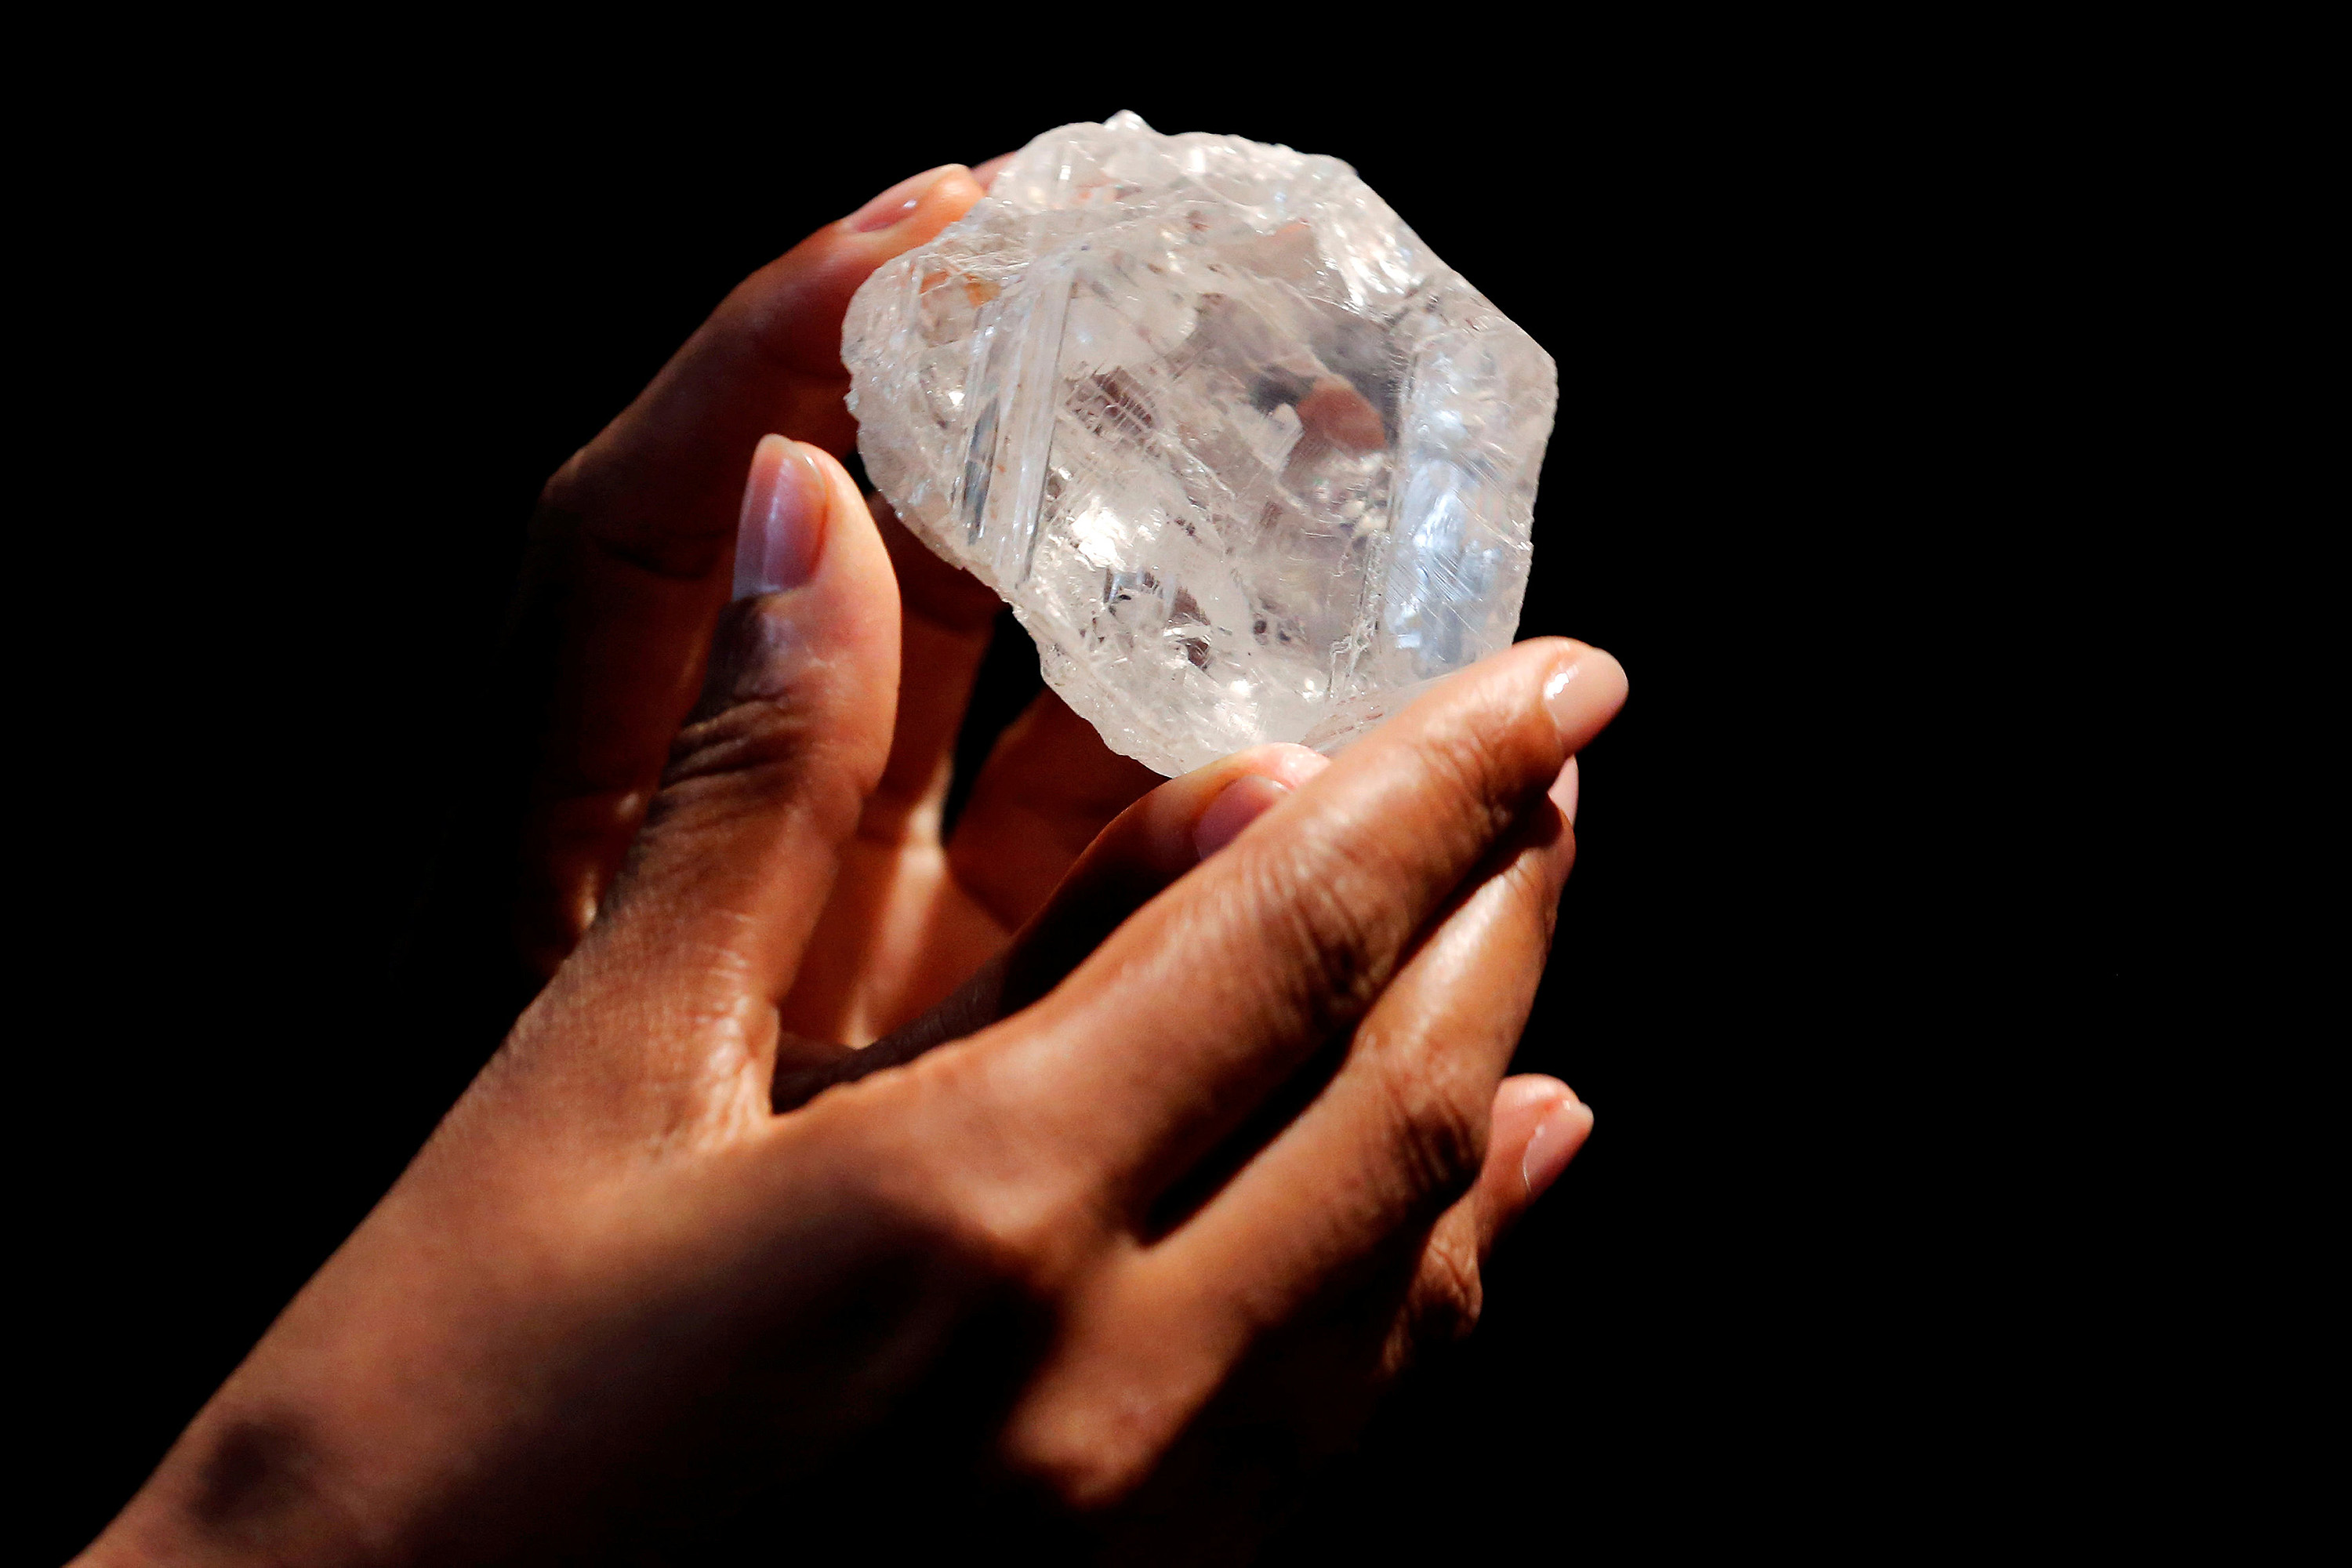 Maior diamante bruto do mundo é vendido por US$ 53 milhões | VEJA